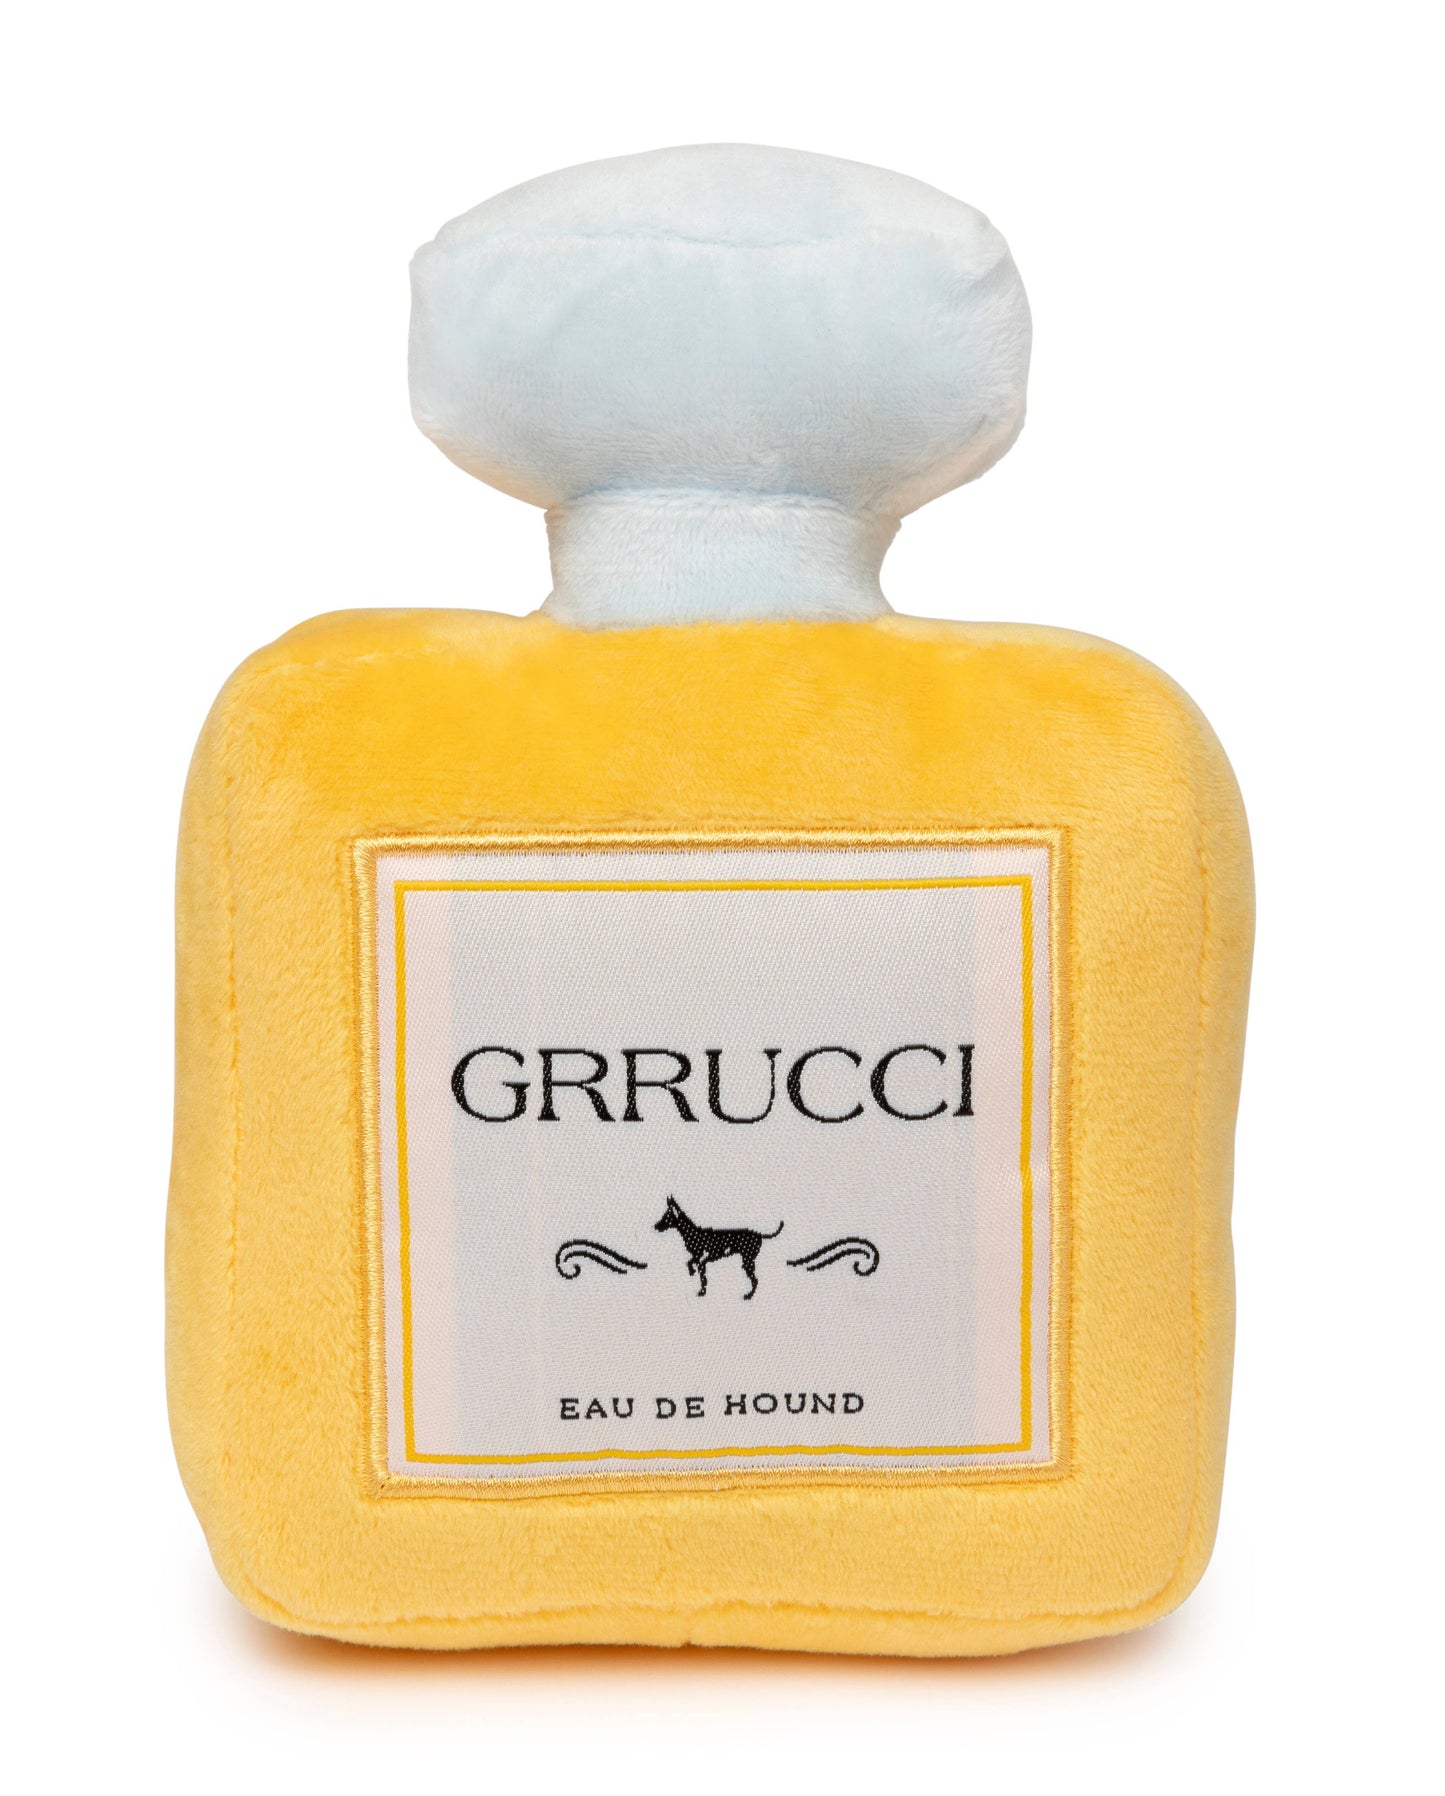 FuzzYard Dog Toy Grrucci Perfume